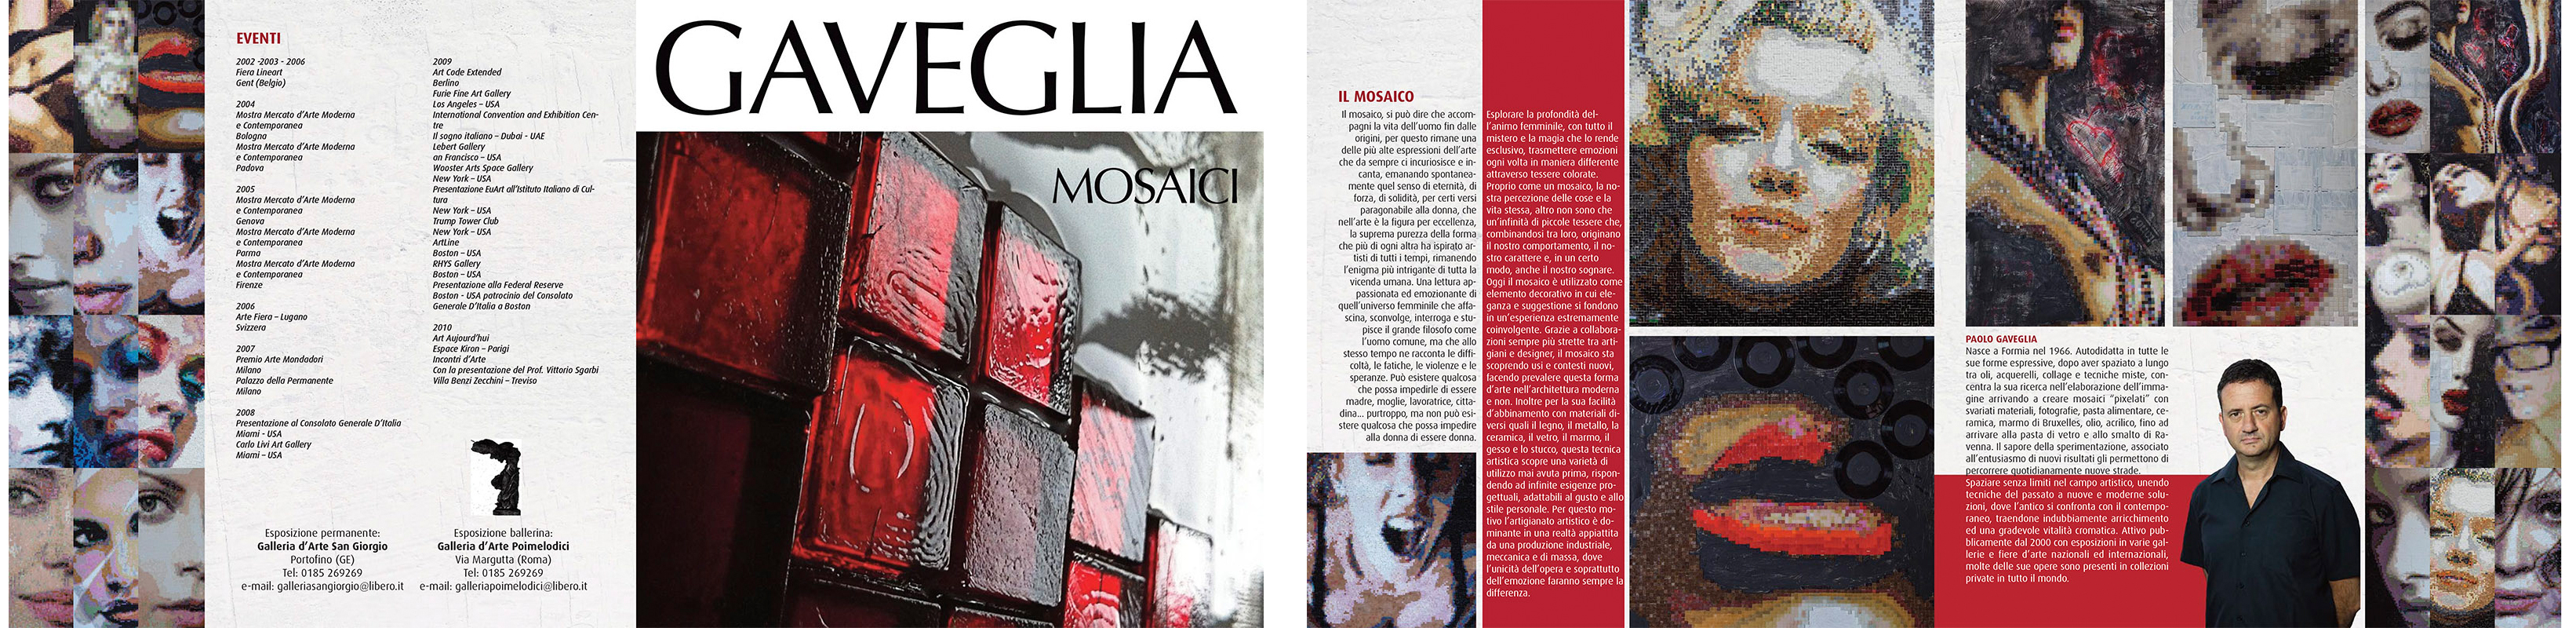 Paolo Gaveglia mosaici, La Spezia, tessere, veneziane, ravennate, brochure